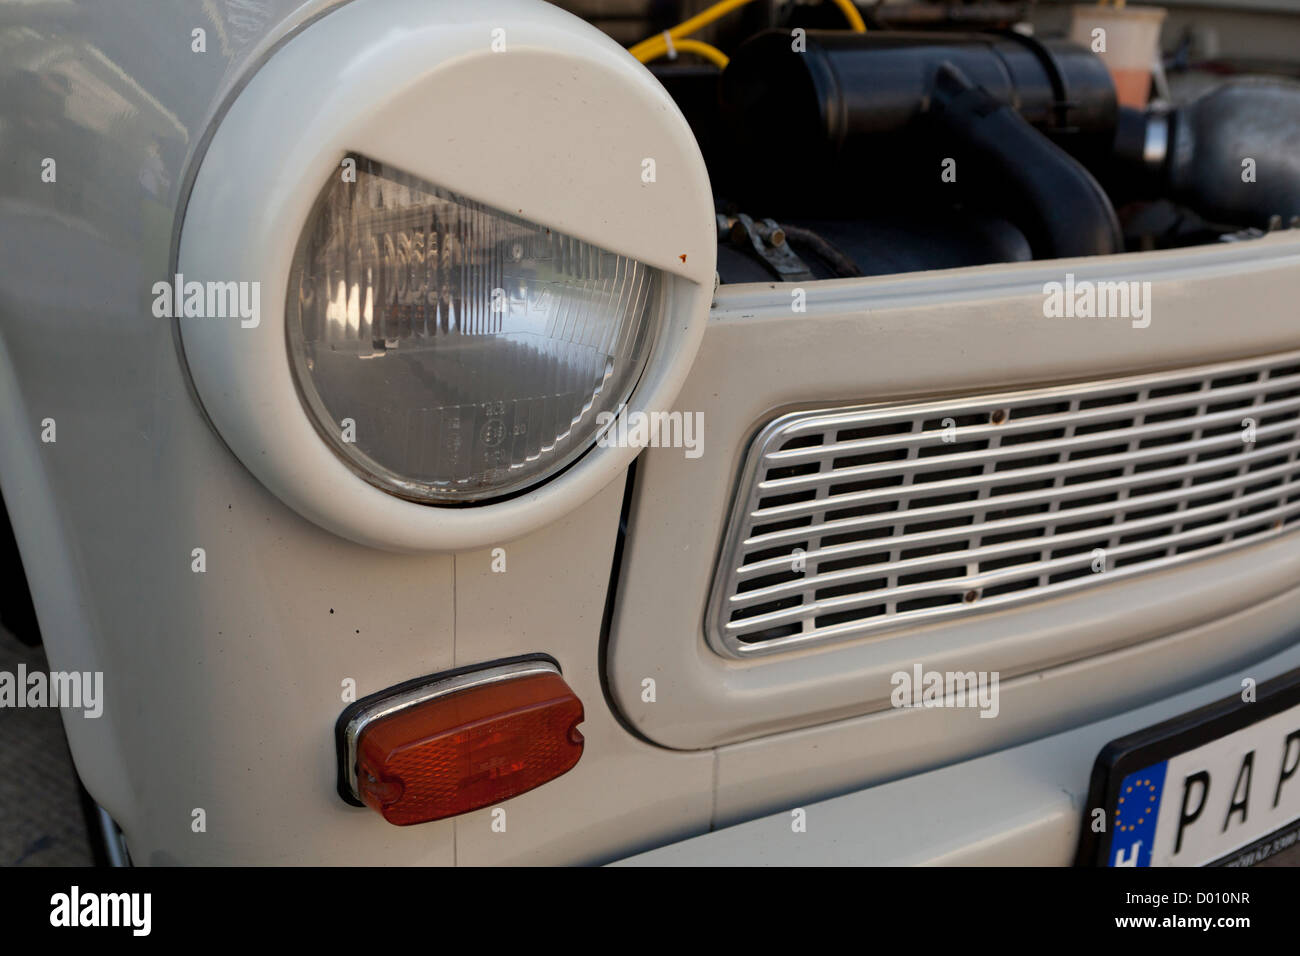 Angry car headlight Stock Photo